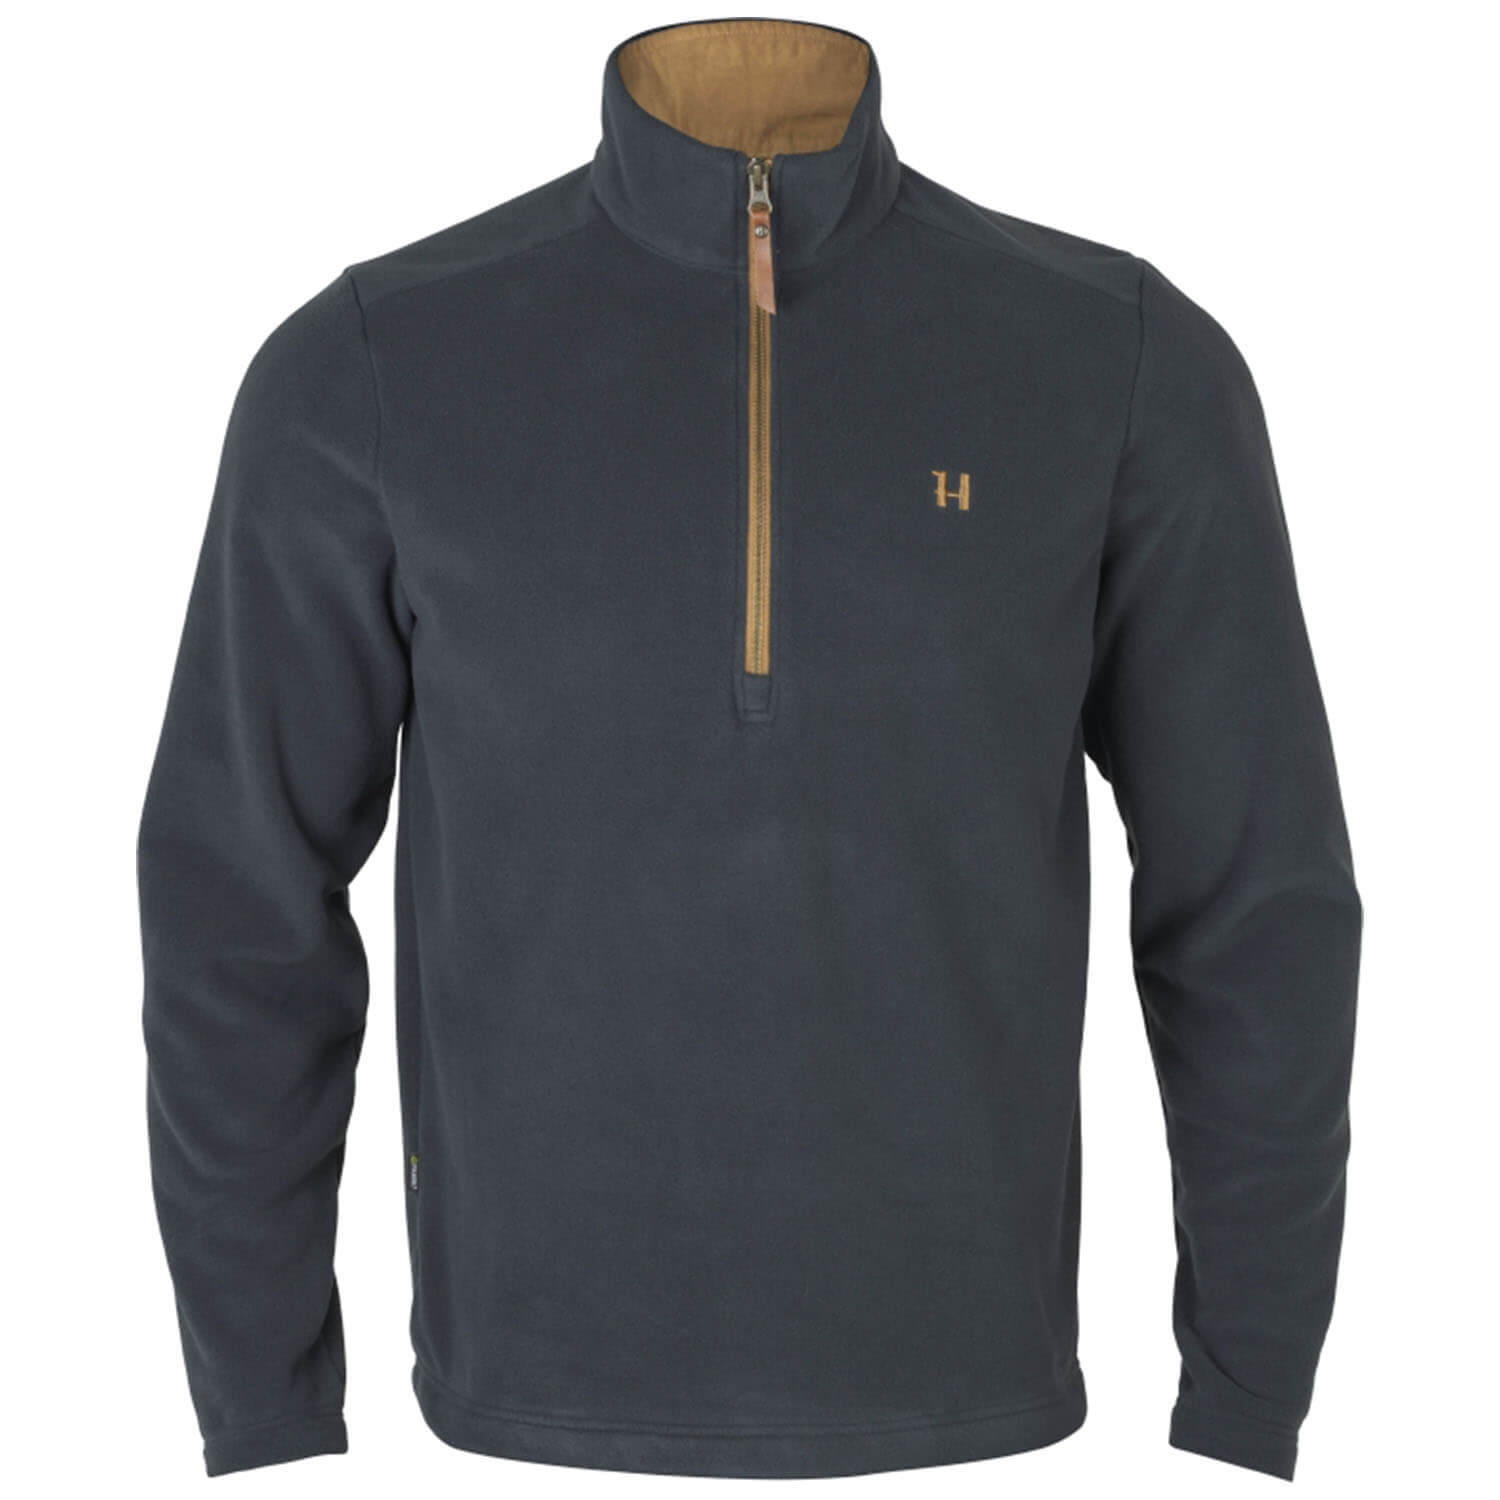 Härkila pullover Sandhem 200 (dark navy) - Sweaters & Jerseys